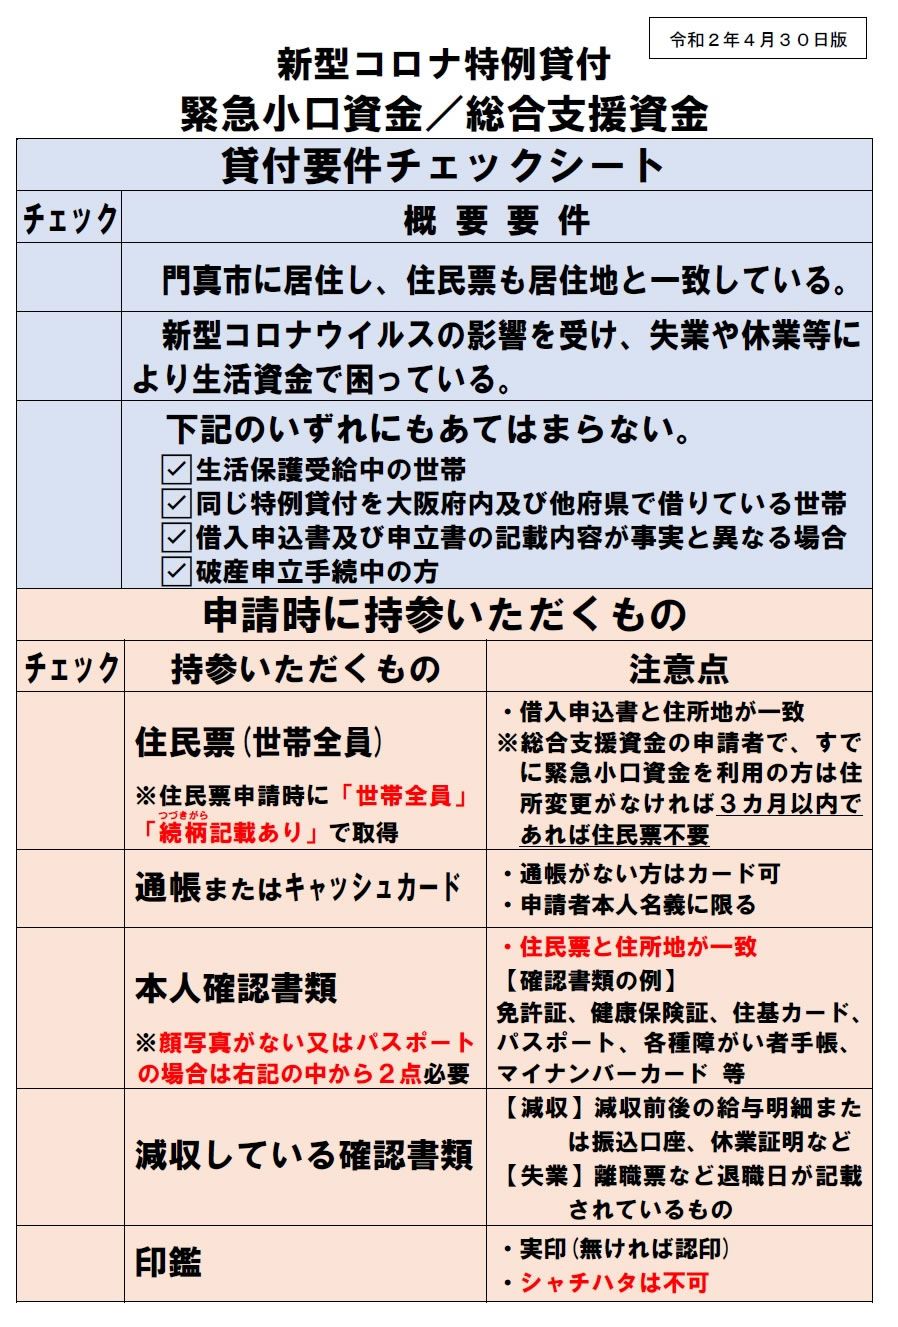 大阪 資金 緊急 小口 緊急小口資金【特例貸付】申請から振込までかかる日数を都道府県ごとに調べてみた